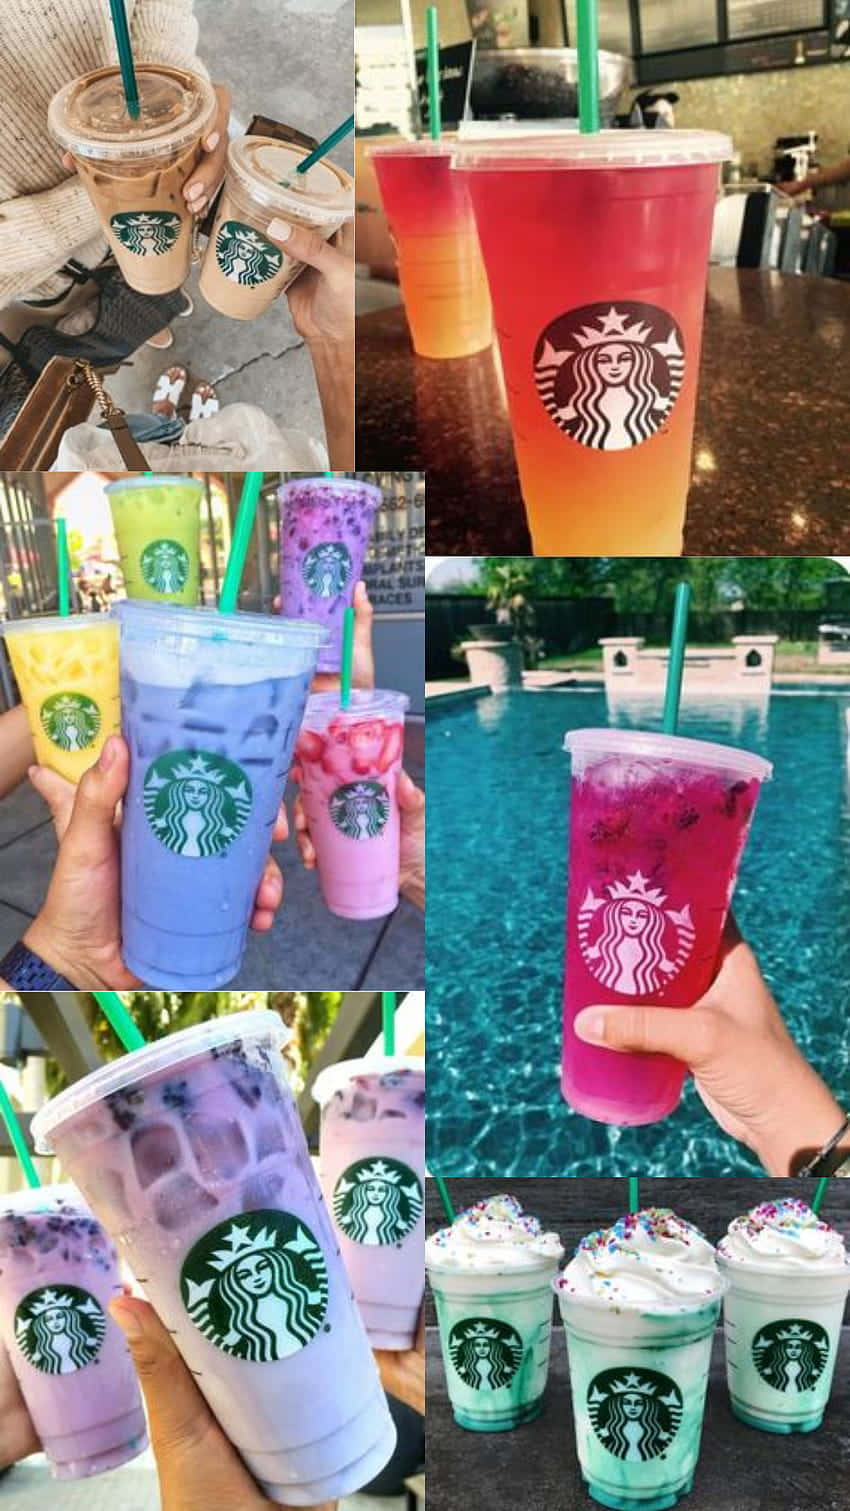 Colagemde Produtos De Bebidas Congeladas Da Starbucks. Papel de Parede